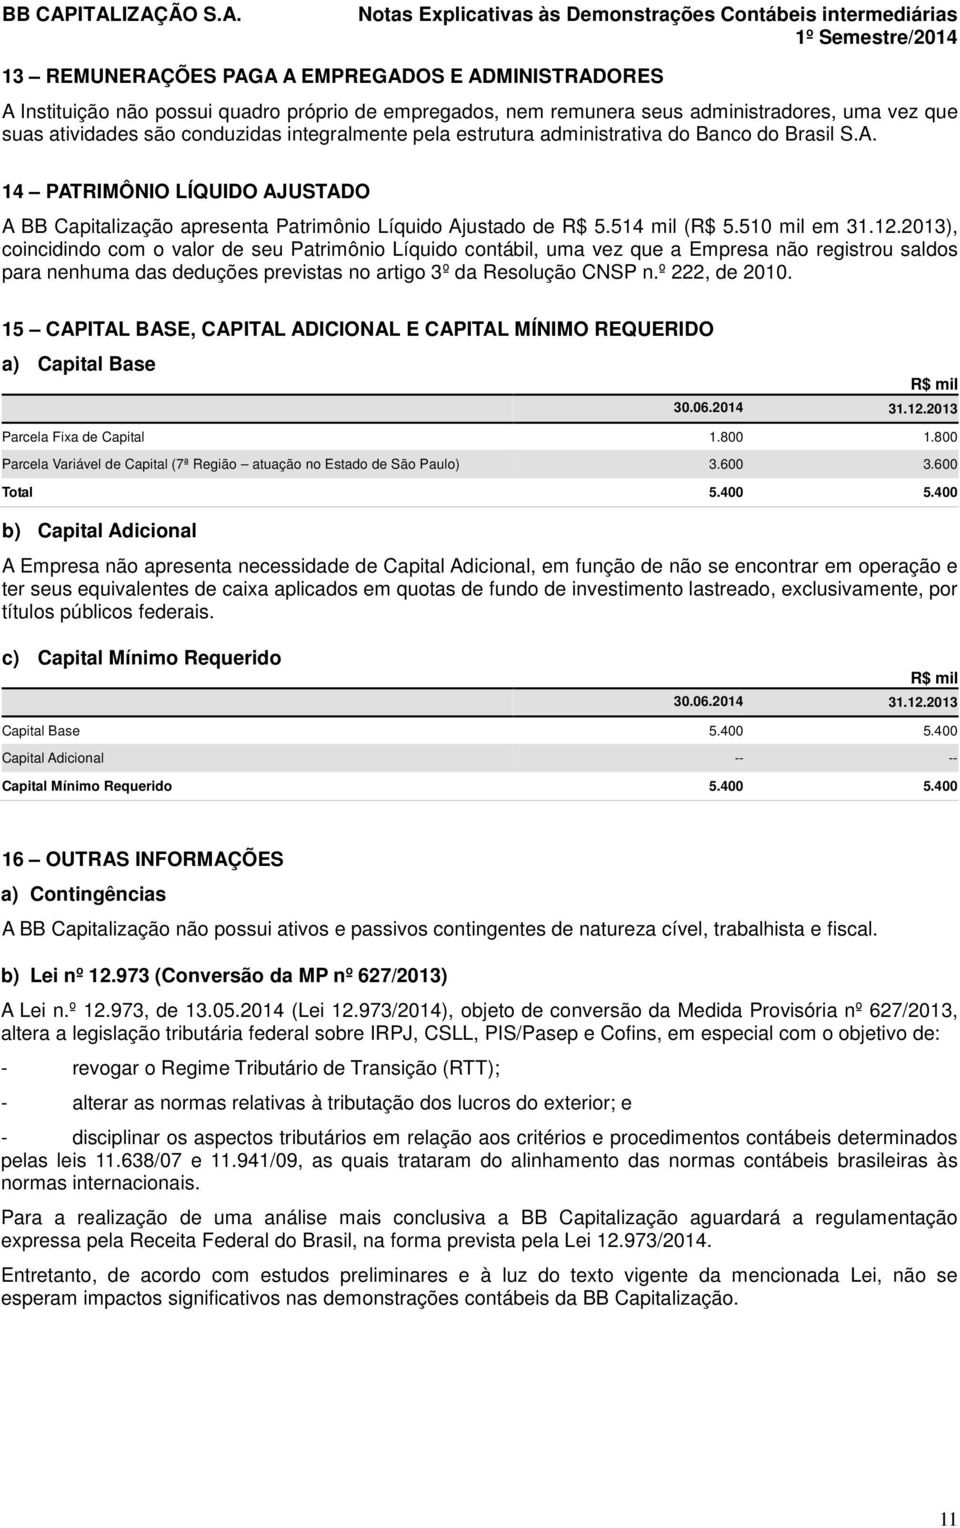 14 PATRIMÔNIO LÍQUIDO AJUSTADO A BB Capitalização apresenta Patrimônio Líquido Ajustado de R$ 5.514 mil (R$ 5.510 mil em 31.12.